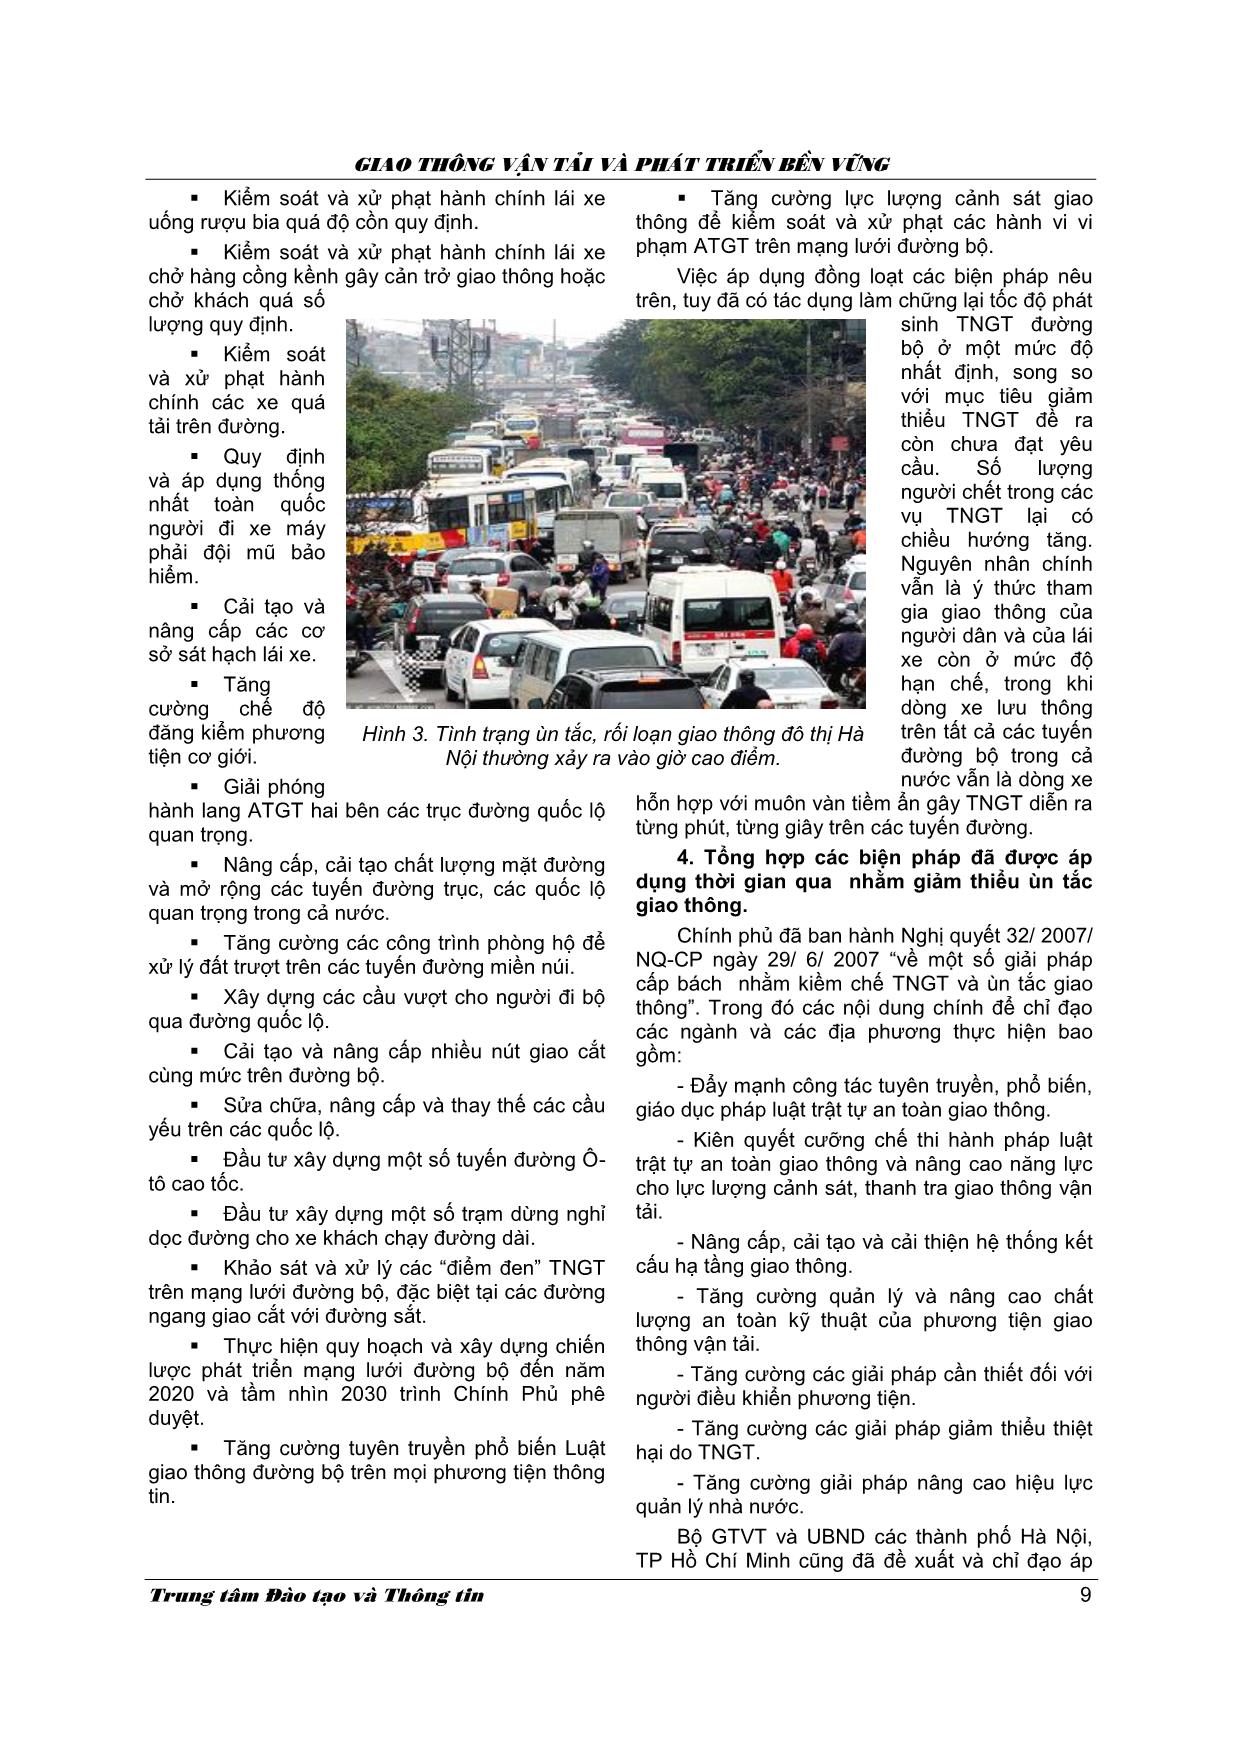 Tình hình và các giải pháp nhằm tăng cường an toàn giao thông đường bộ và an toàn giao thông đô thị ở Việt Nam trang 5